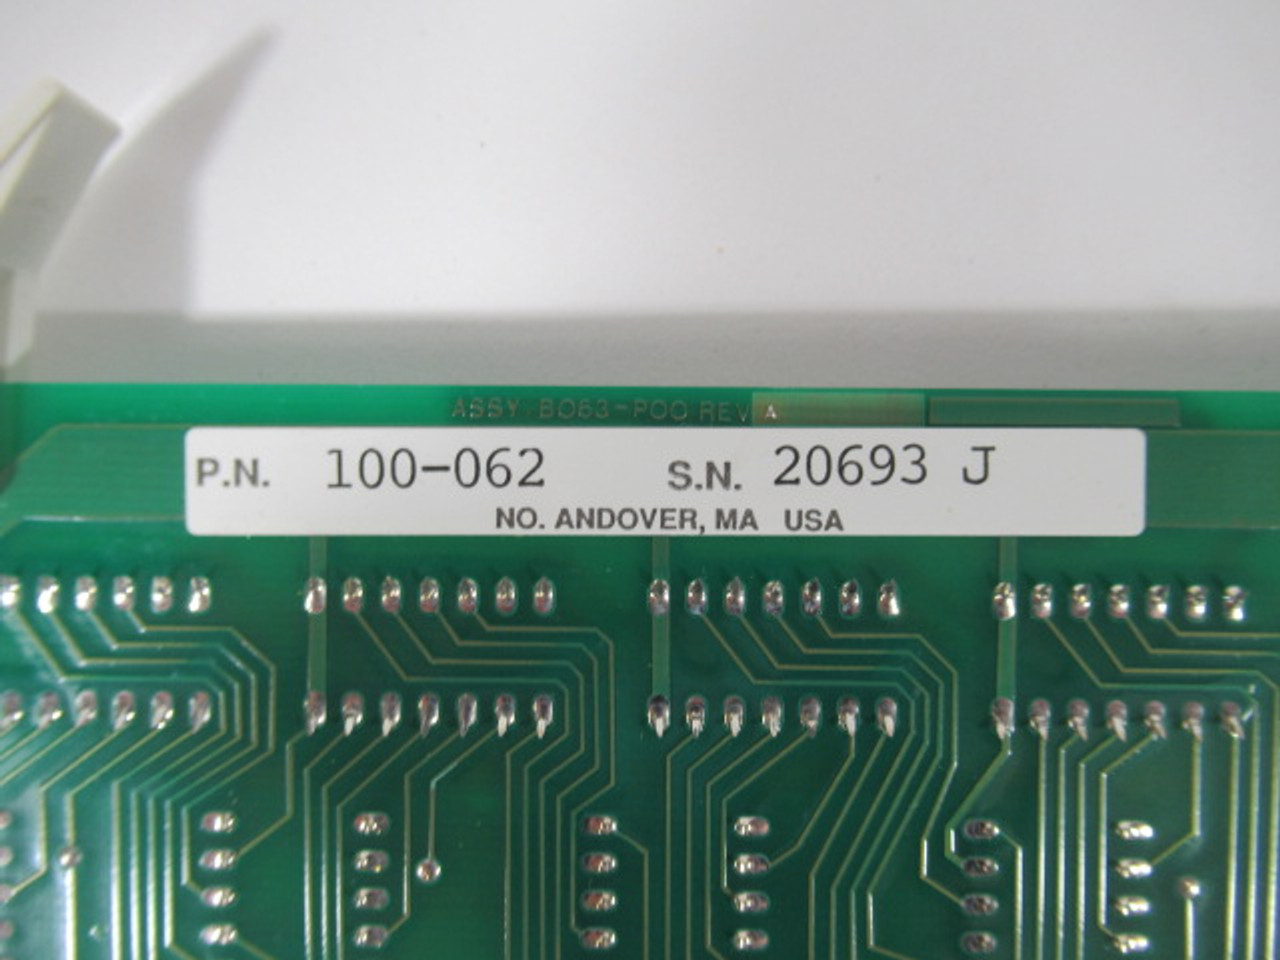 Modicon 100-062 I/O Interface Board AS-B063-P00 A2 USED